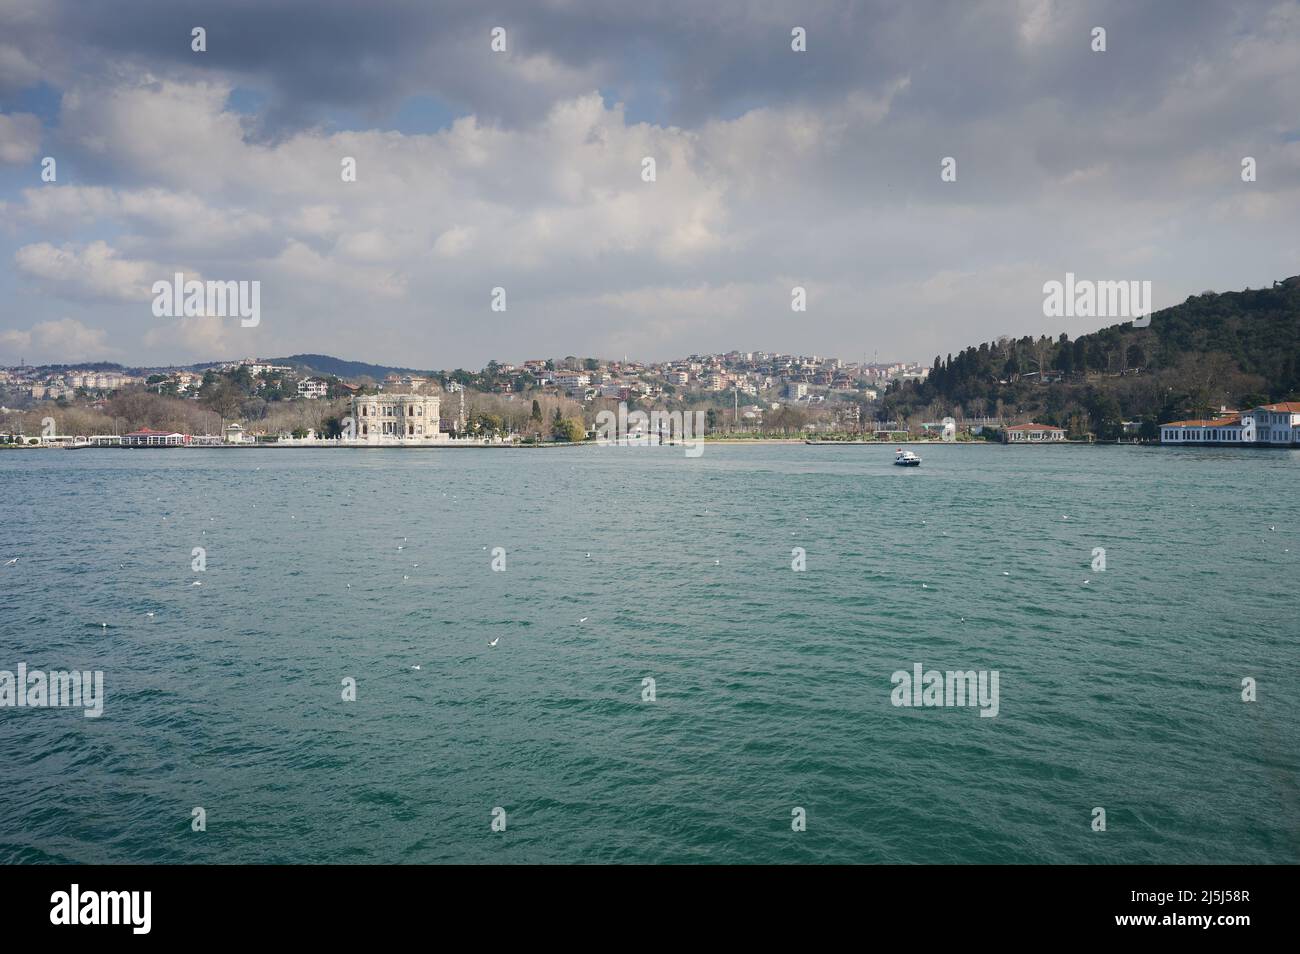 Palast am Ufer des Bosporus. Wahrzeichen der Istanbuler Küste Stockfoto